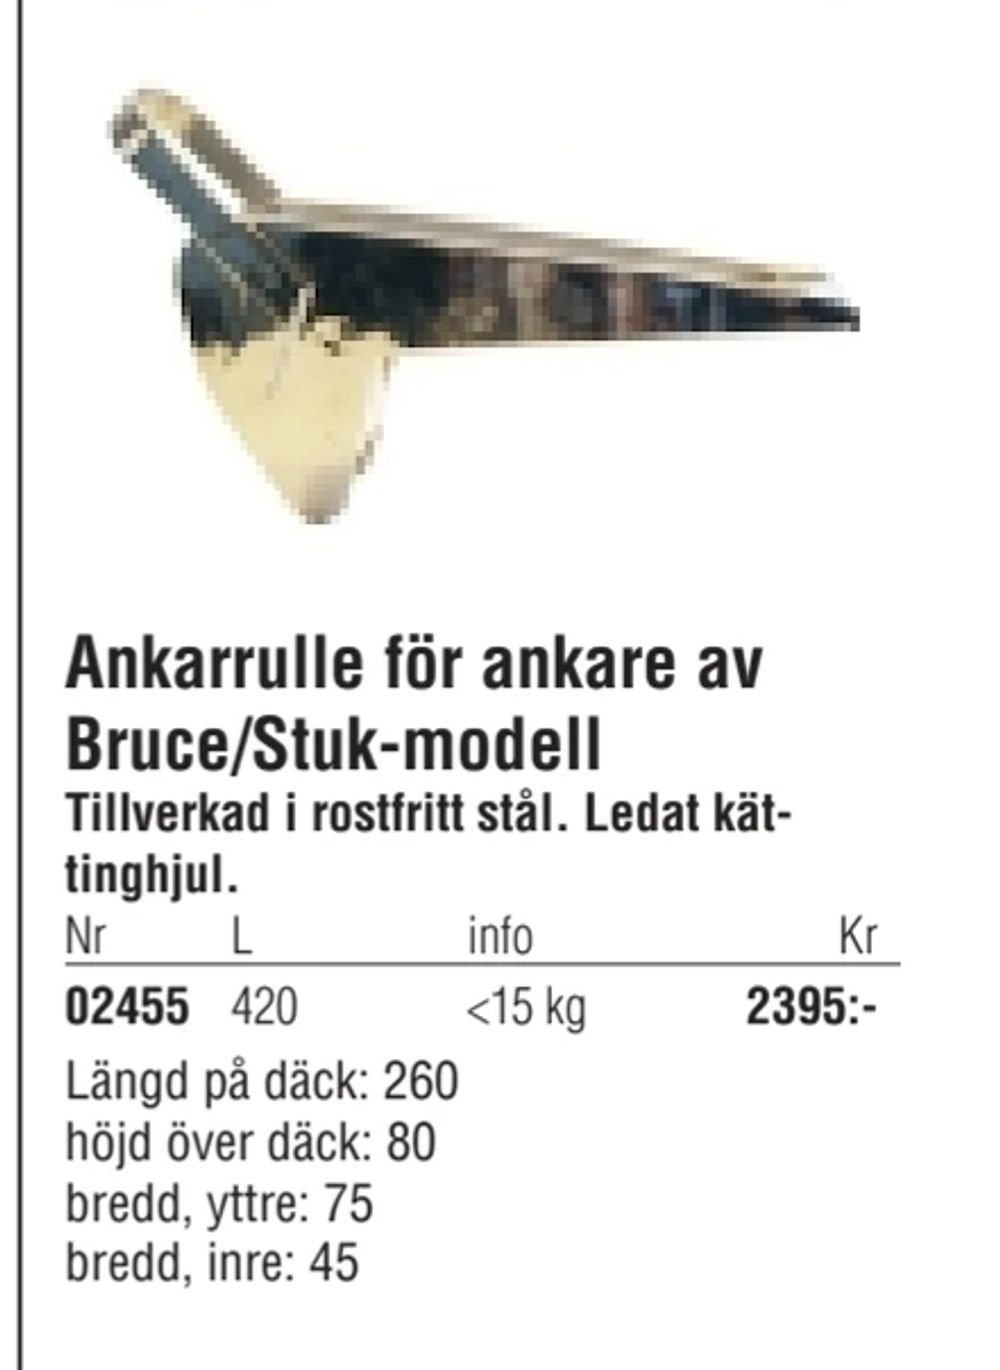 Erbjudanden på Ankarrulle för ankare av Bruce/Stuk-modell från Erlandsons Brygga för 2 395 kr